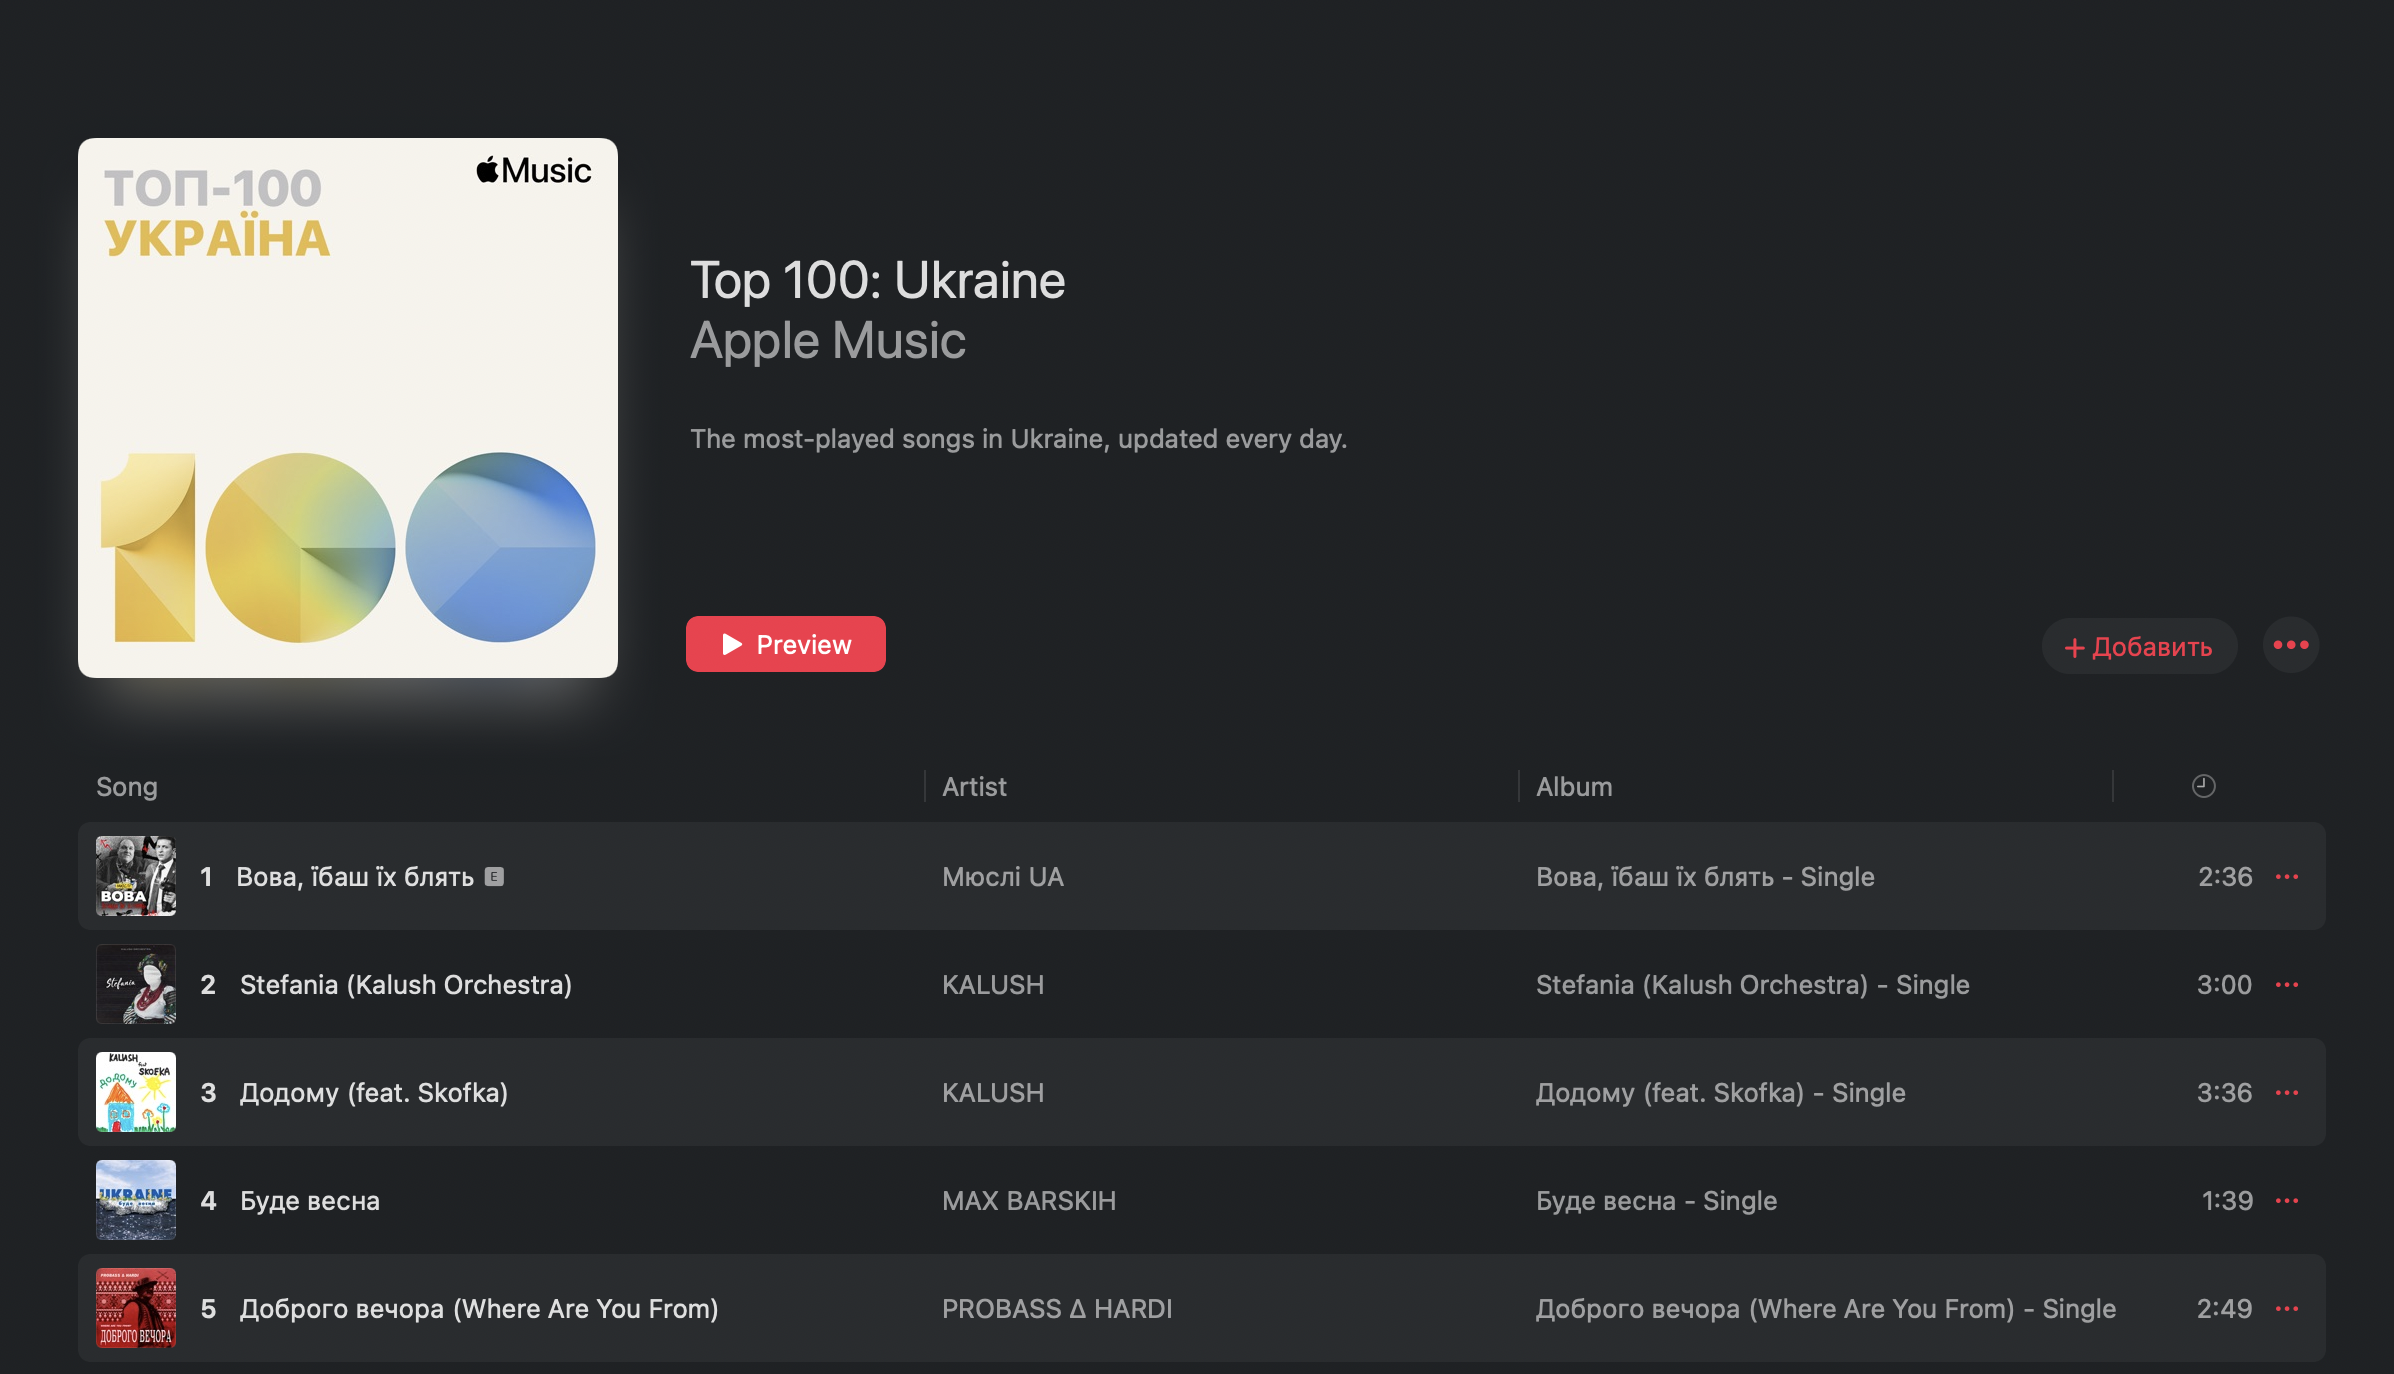 «Вова, ї#аш їх б#ять», «Стефанія», «Додому», «Буде весна» та «Доброго вечора»: топ-5 пісень Apple Music в Україні